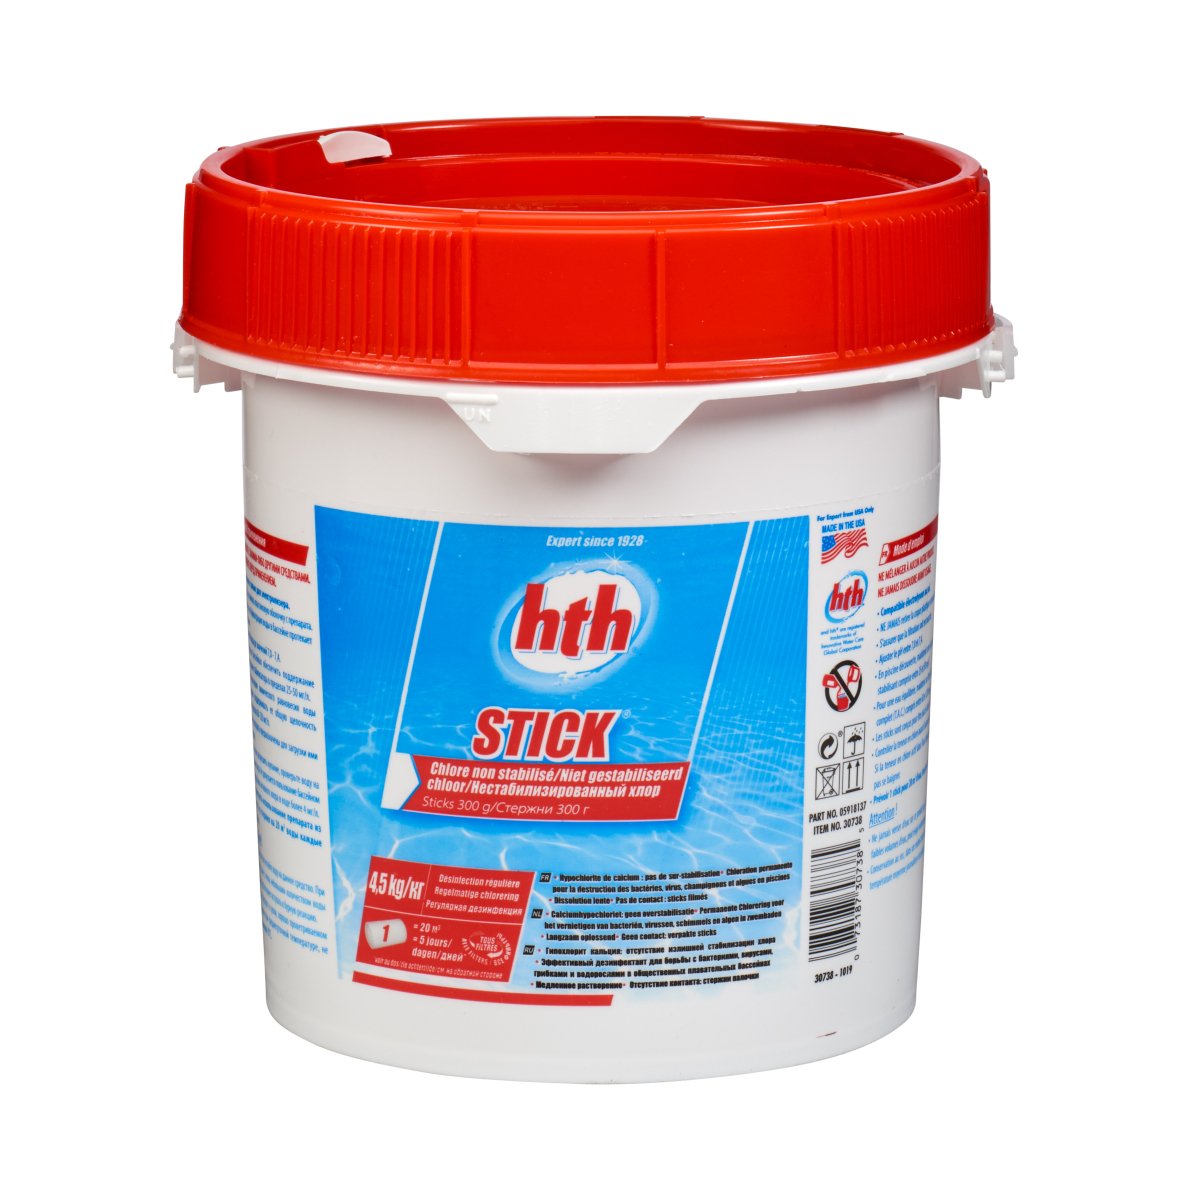 HTH chlorine sticks 300gr | 4.5kg